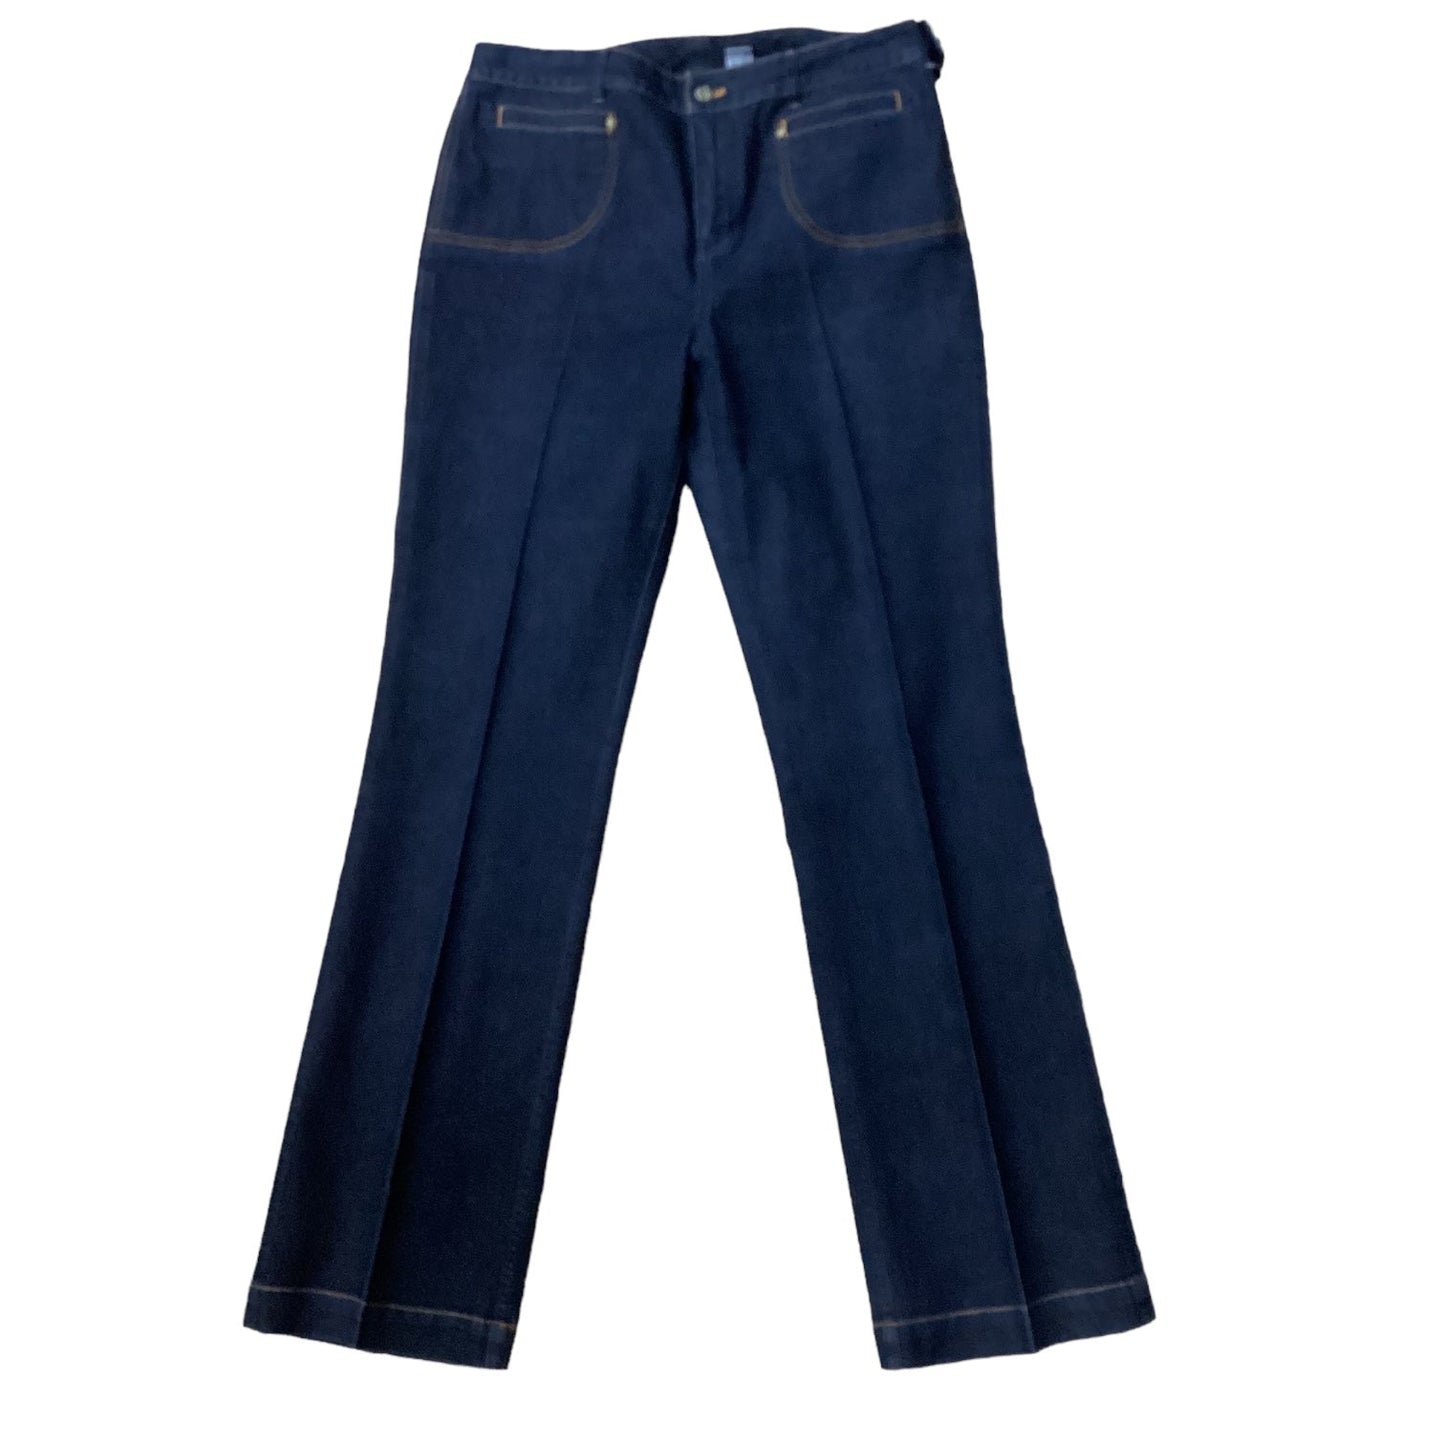 Blue Denim Jeans Boot Cut Chicos, Size 1.5